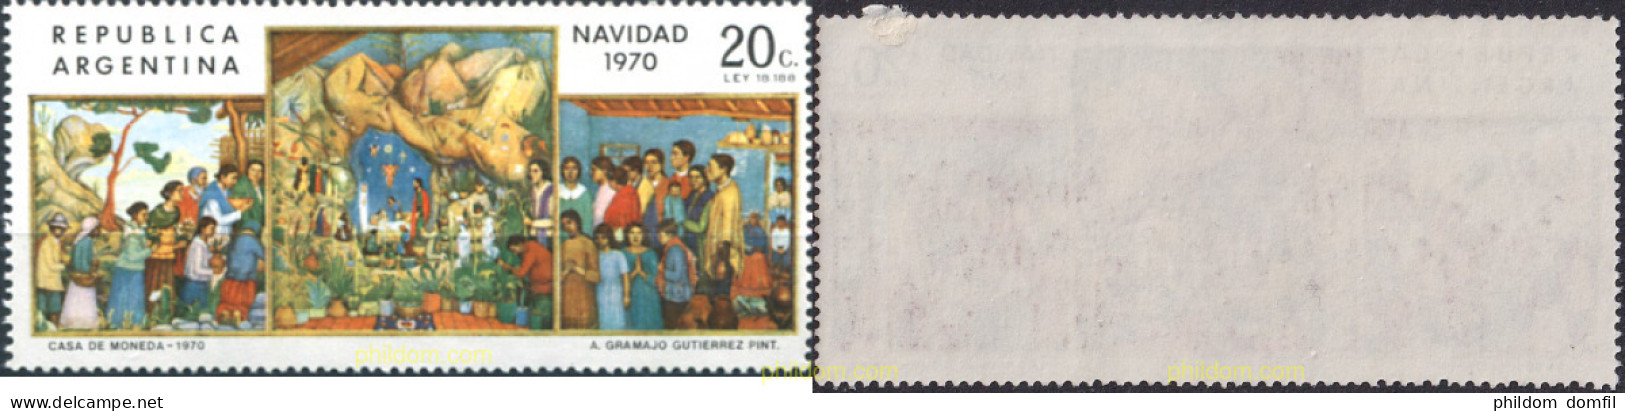 727270 MNH ARGENTINA 1970 NAVIDAD - Nuevos